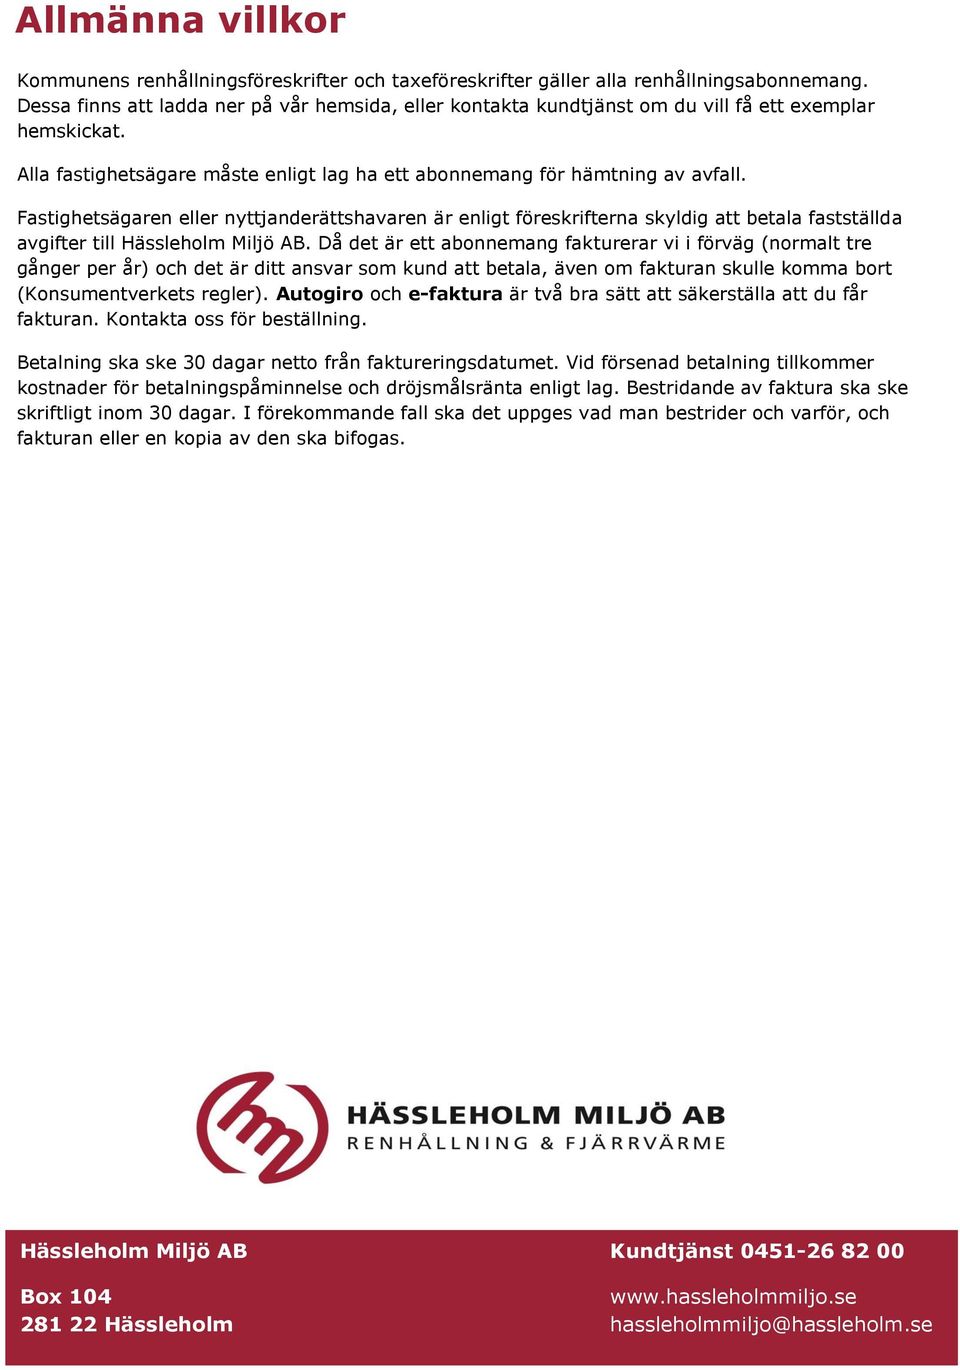 Fastighetsägaren eller nyttjanderättshavaren är enligt föreskrifterna skyldig att betala fastställda avgifter till Hässleholm Miljö AB.